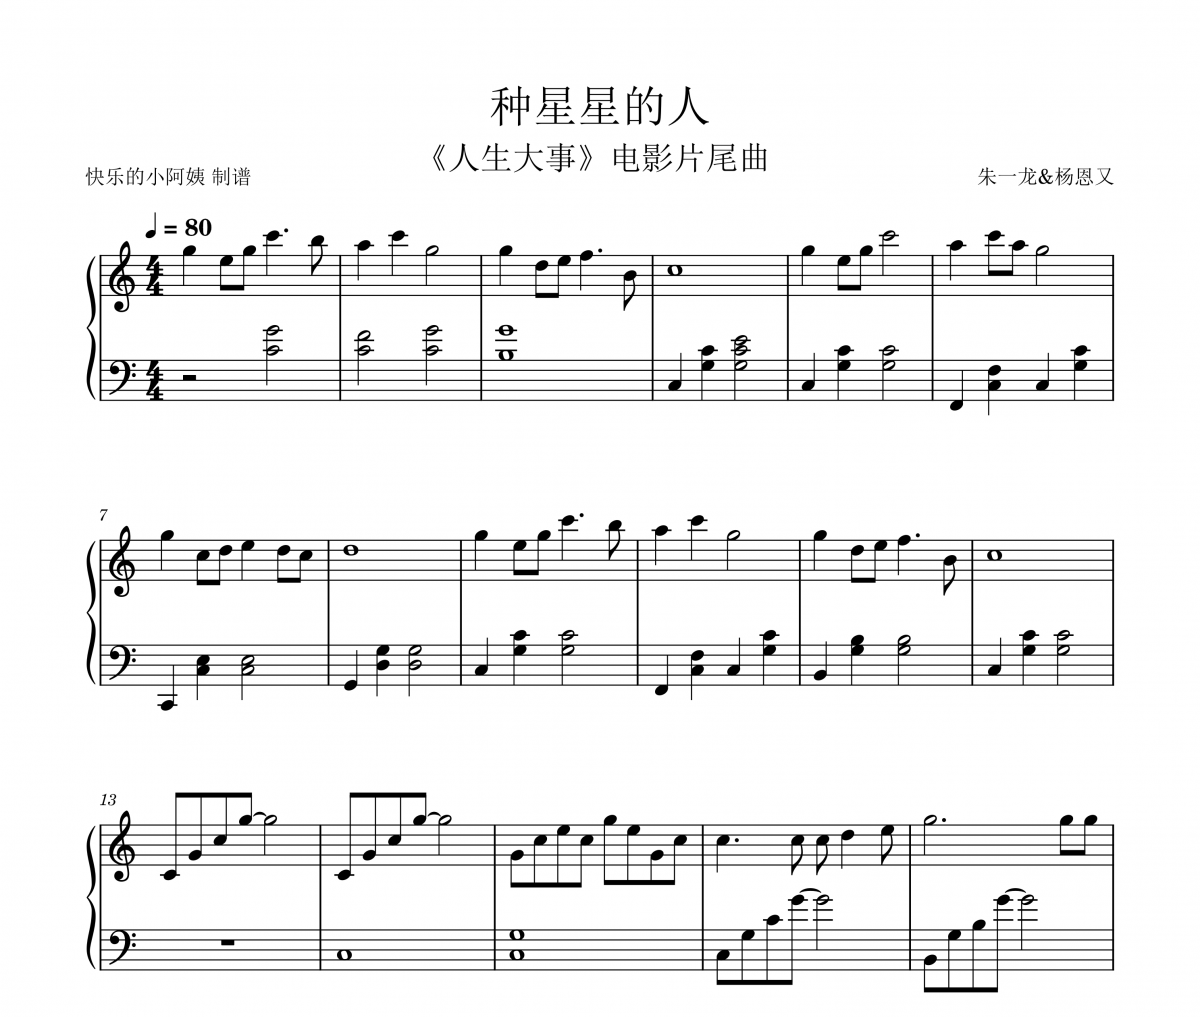 朱一龙/杨恩又 种星星的人 C调《人生大事》片尾曲钢琴谱五线谱